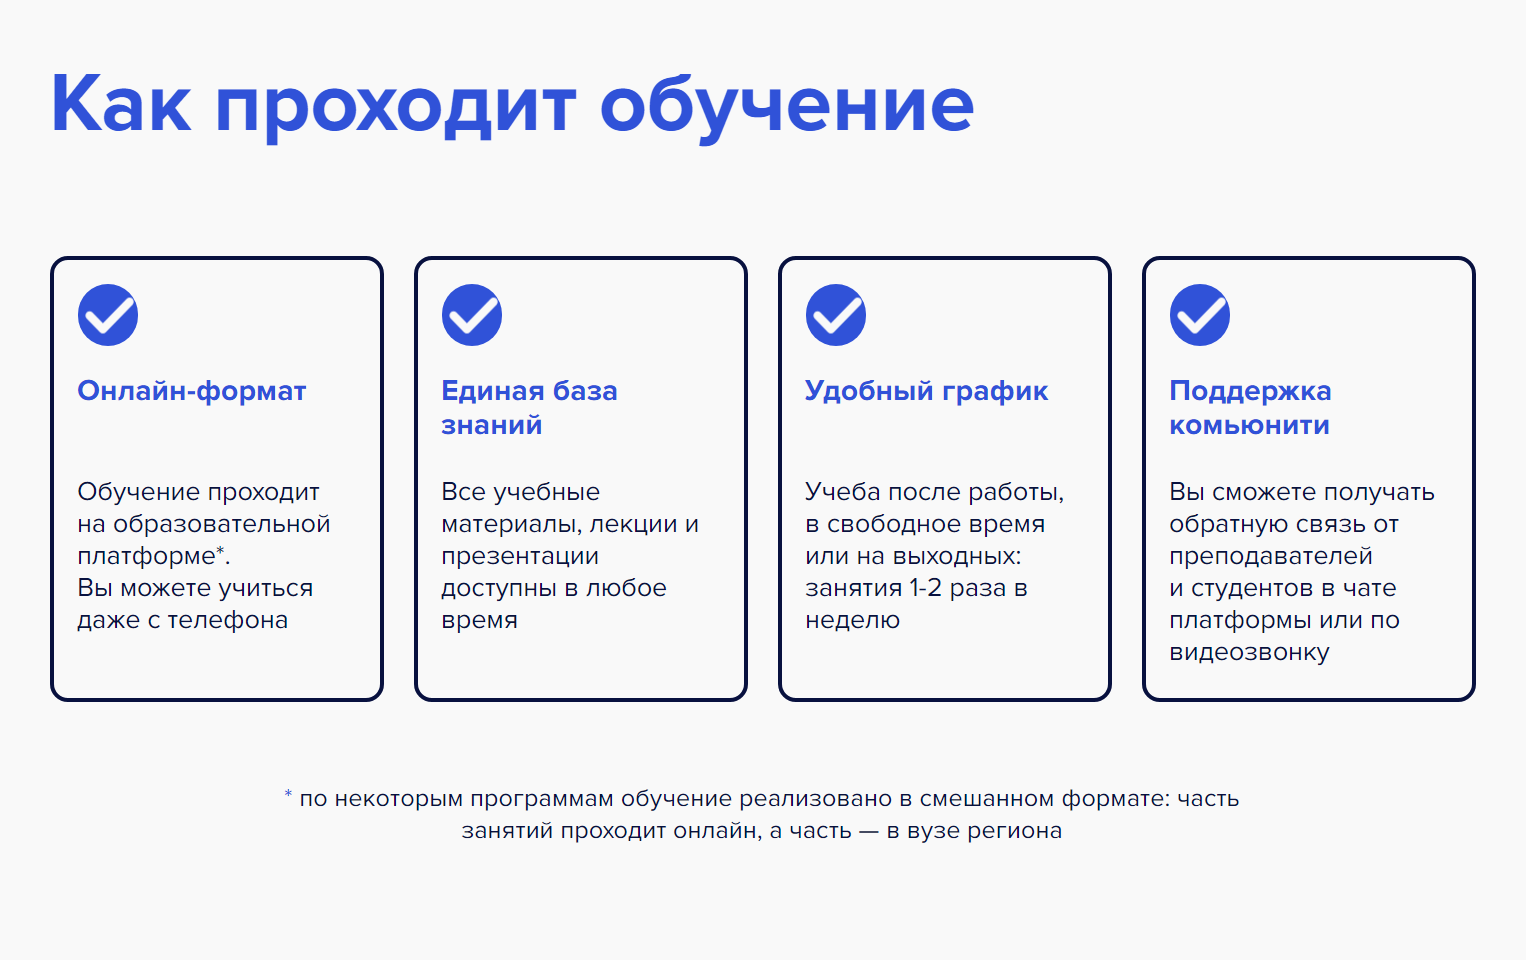 Сейчас можно учиться онлайн и практиковаться в одном из учебных заведений своего города. Источник: tgu-dpo.ru